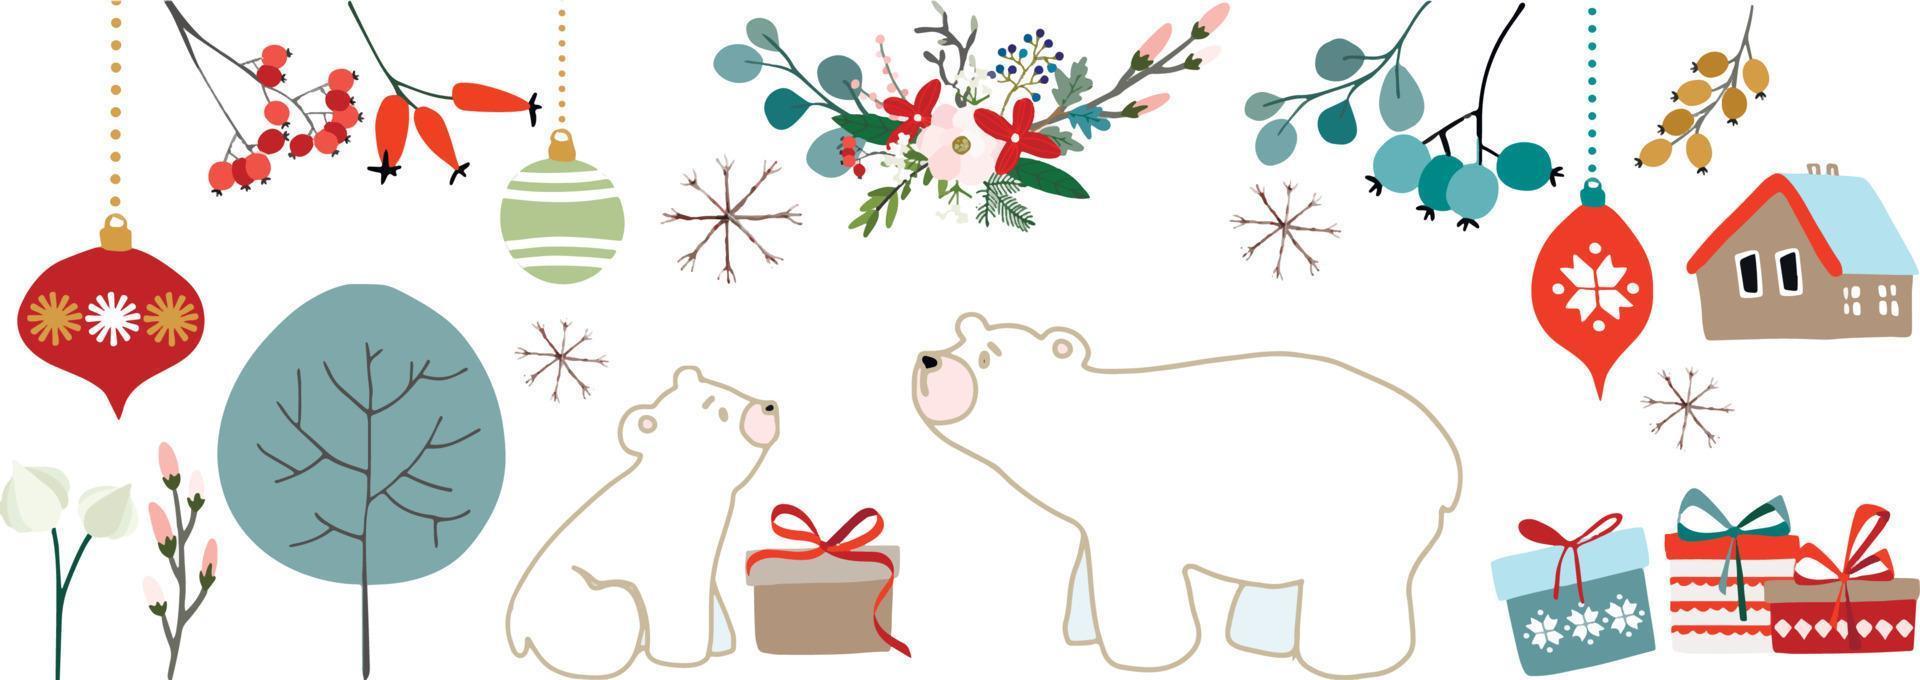 vacaciones, navidad, patrón de año nuevo con osos, árbol de navidad, bolas, hogar, caja de regalo. vector